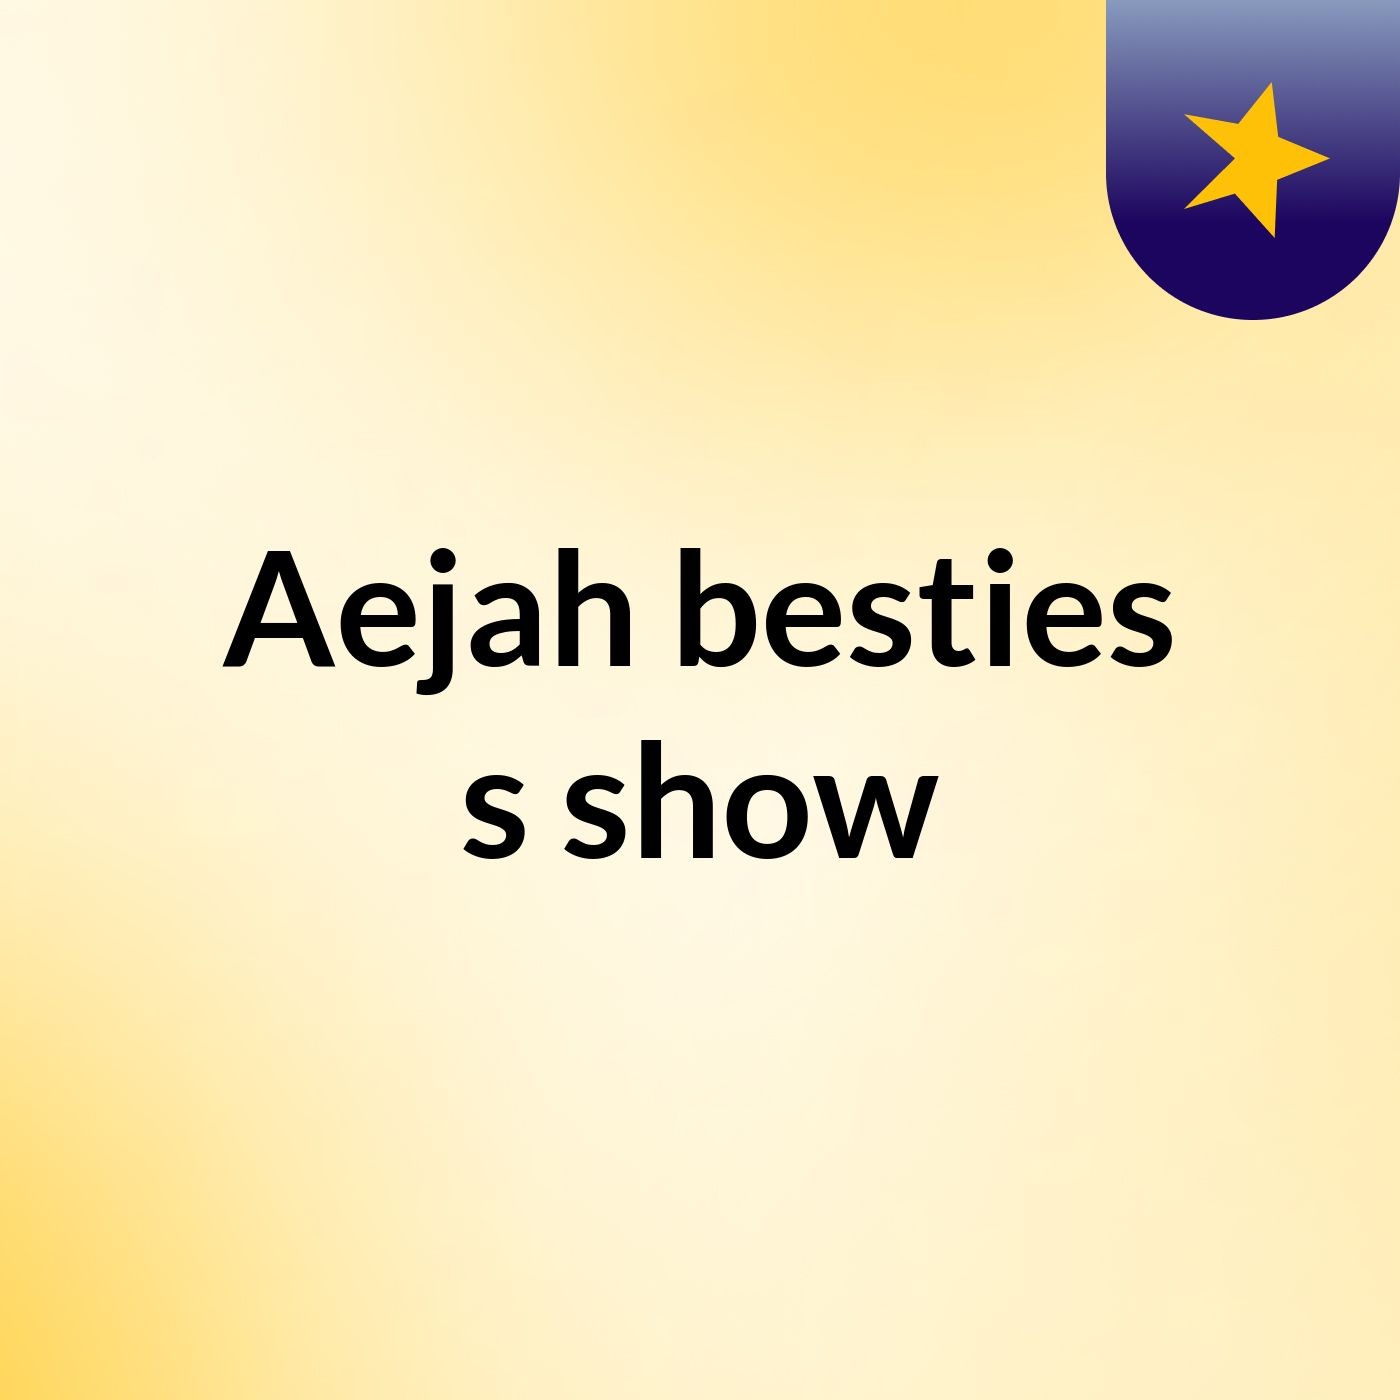 Episode 2 - Aejah besties's show